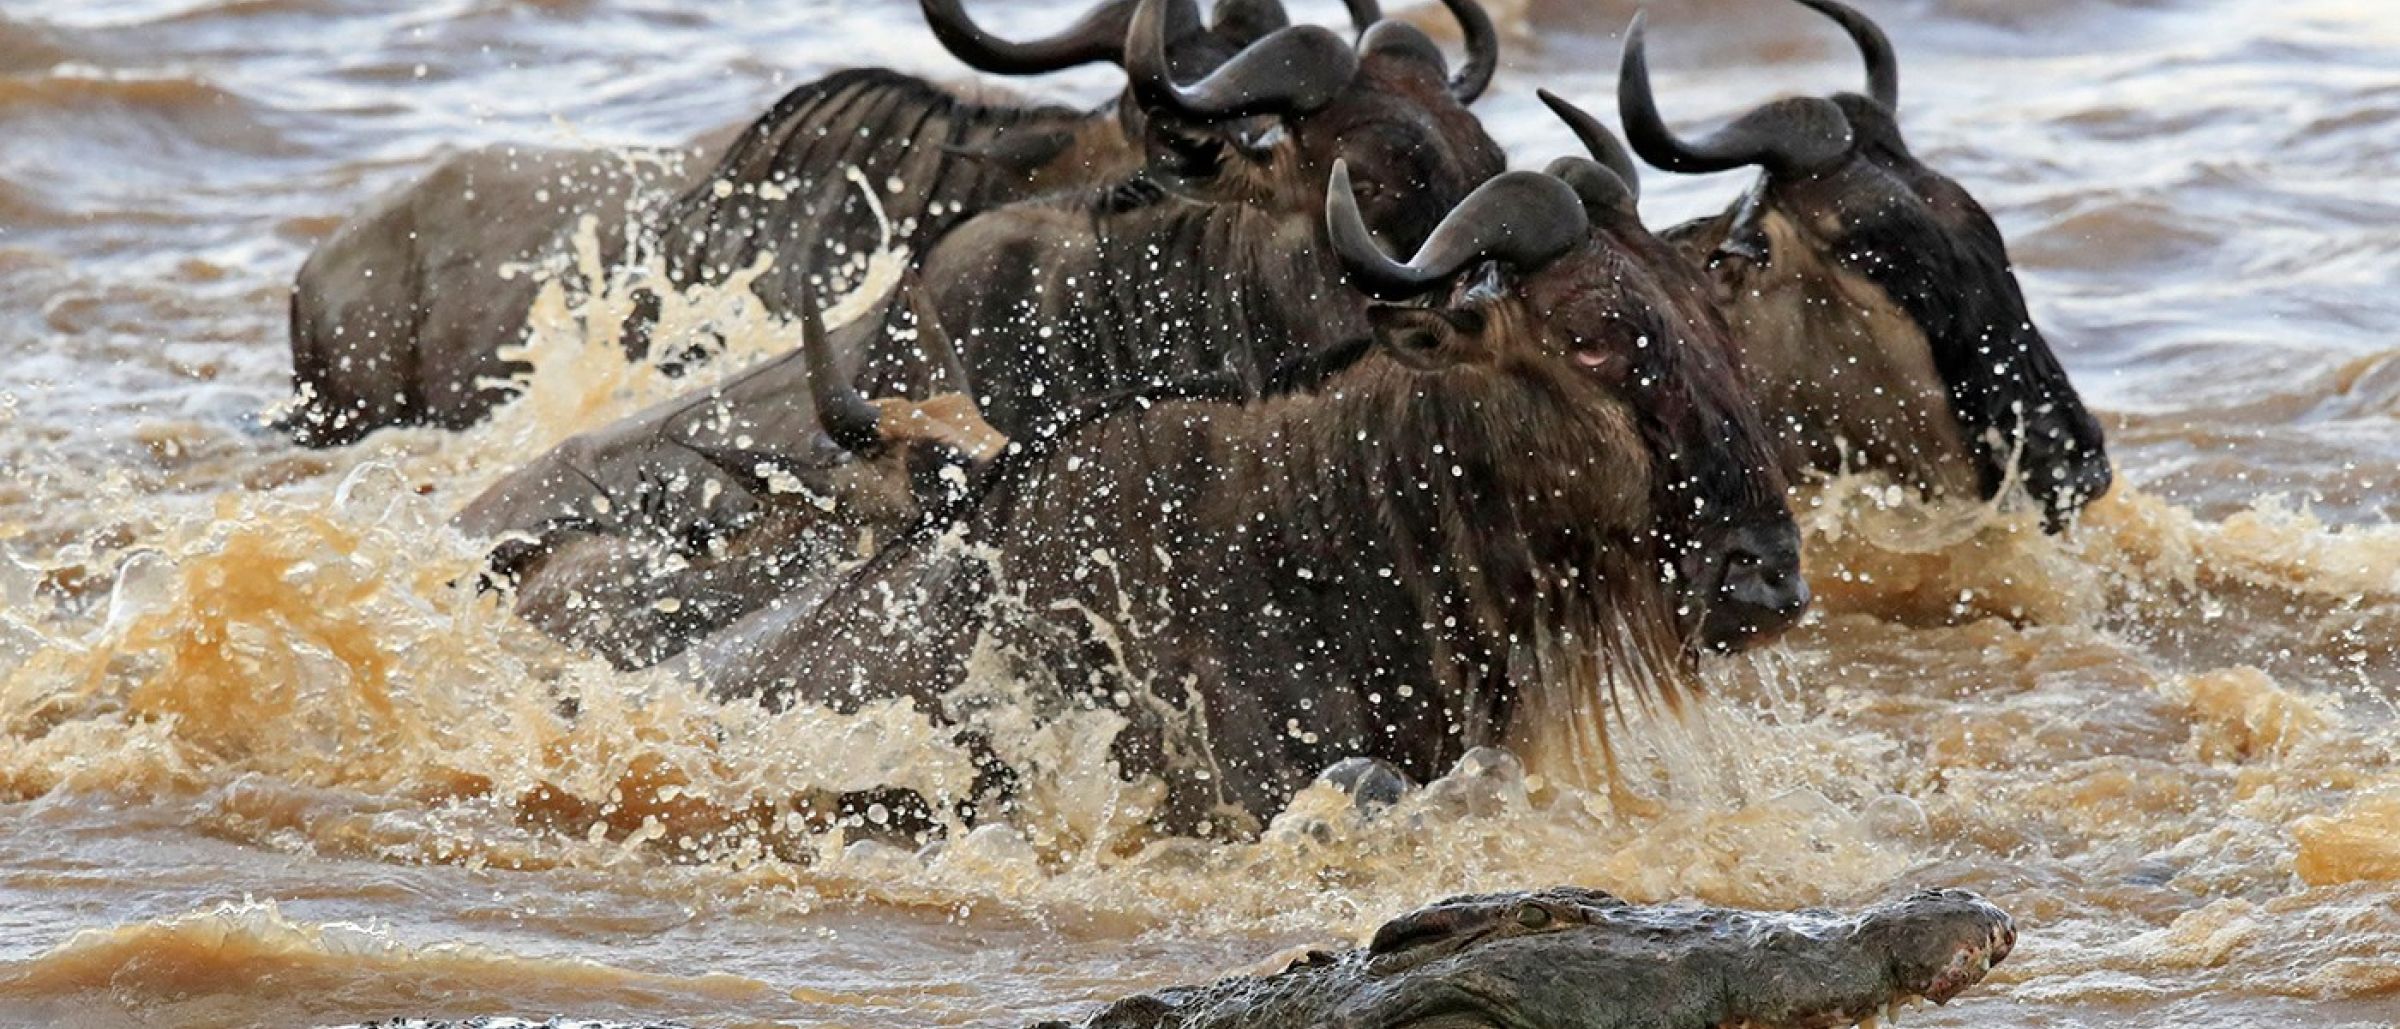 Gnus durchqueren den Mara Fluss